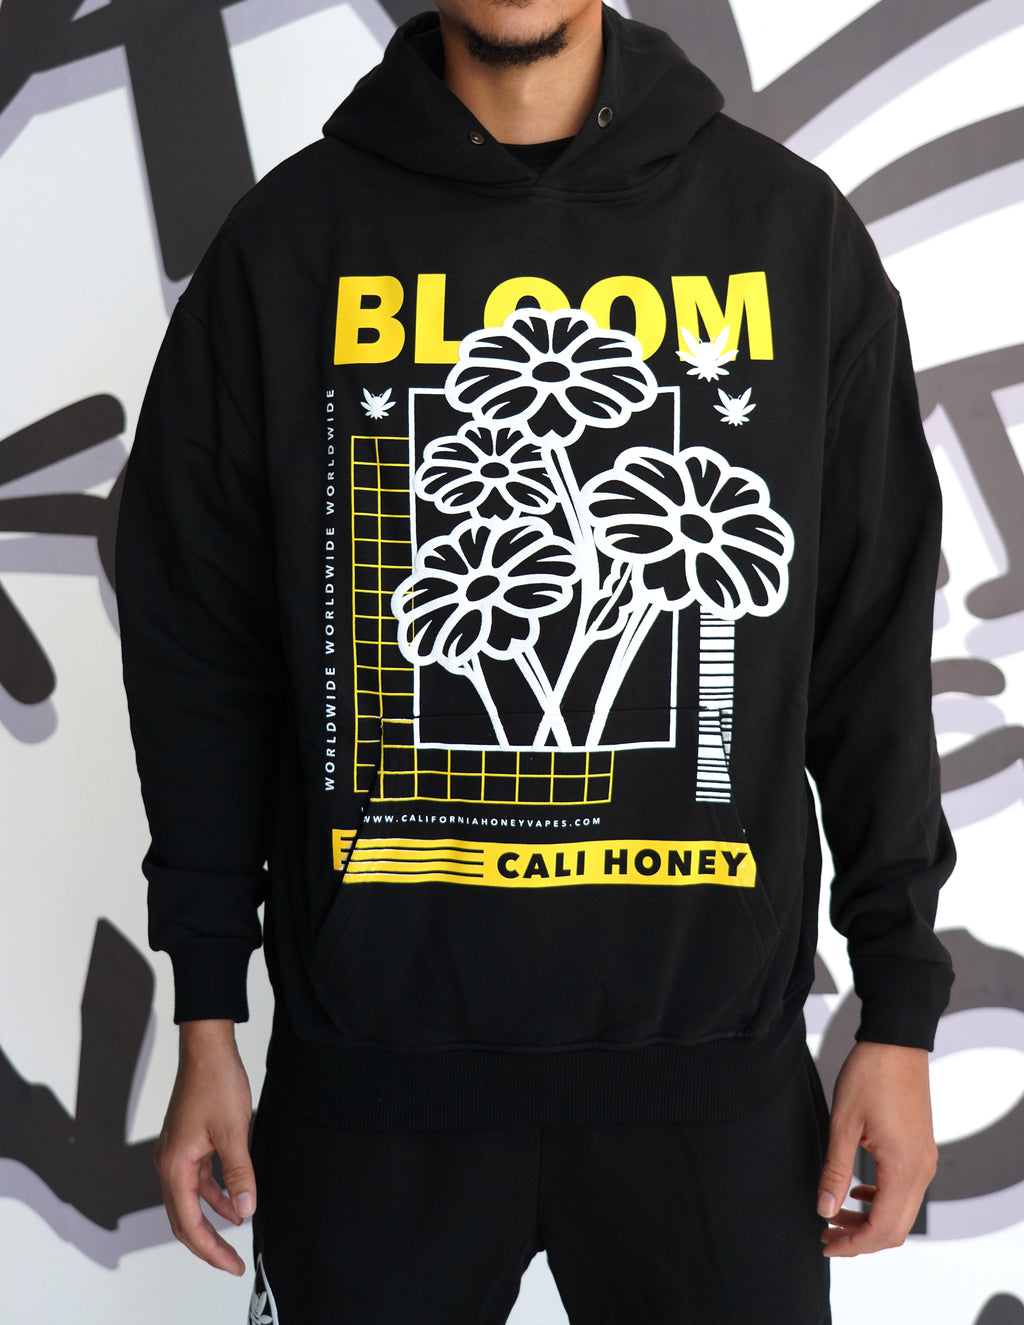 Cali Honey Bloom Black Hoodie